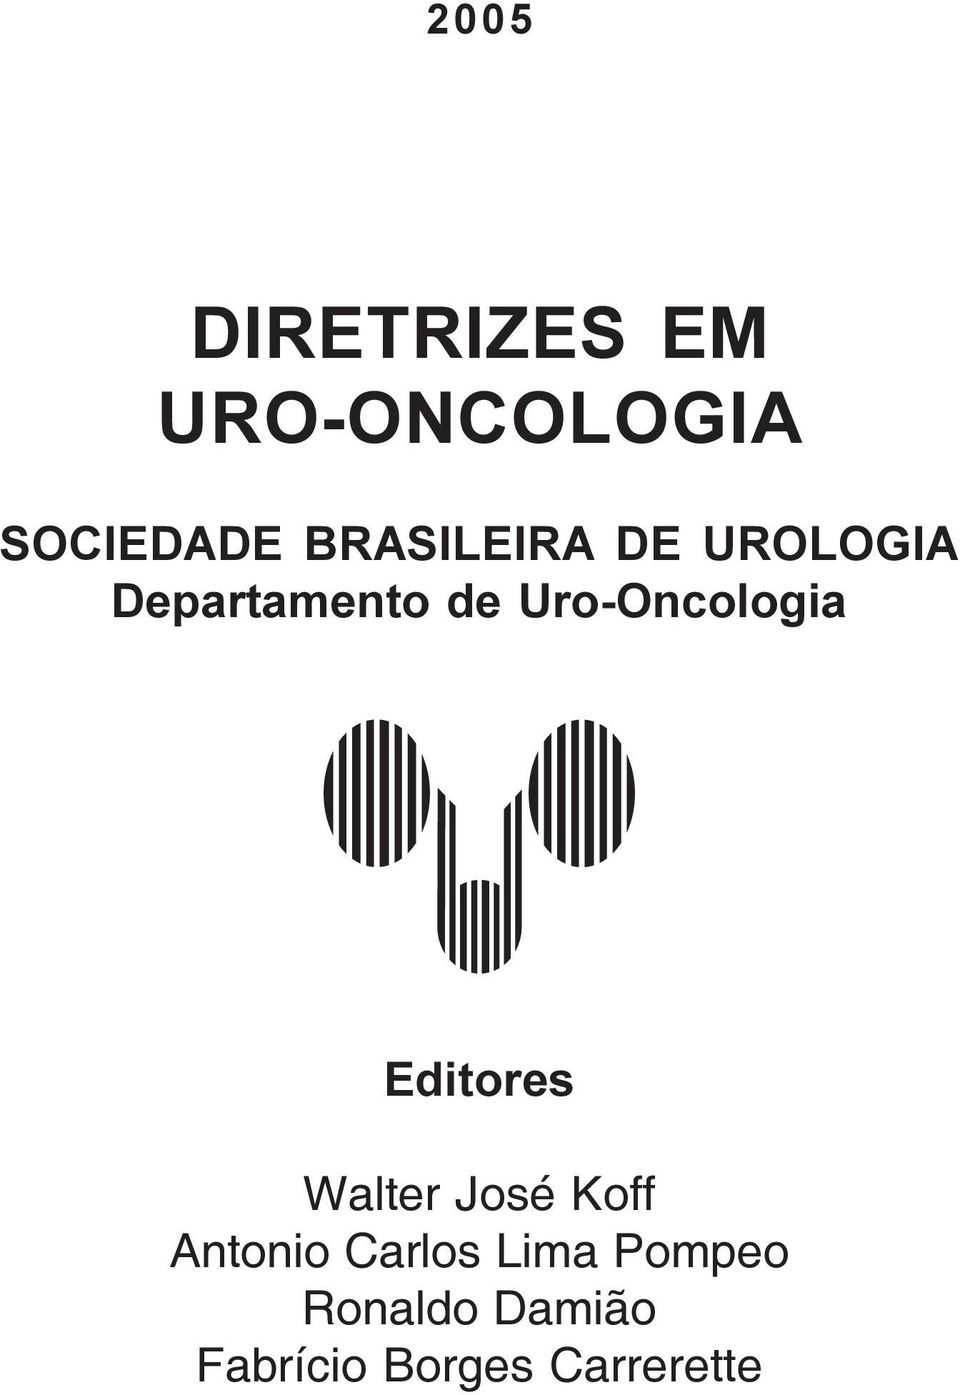 Uro-Oncologia Editores Walter José Koff Antonio